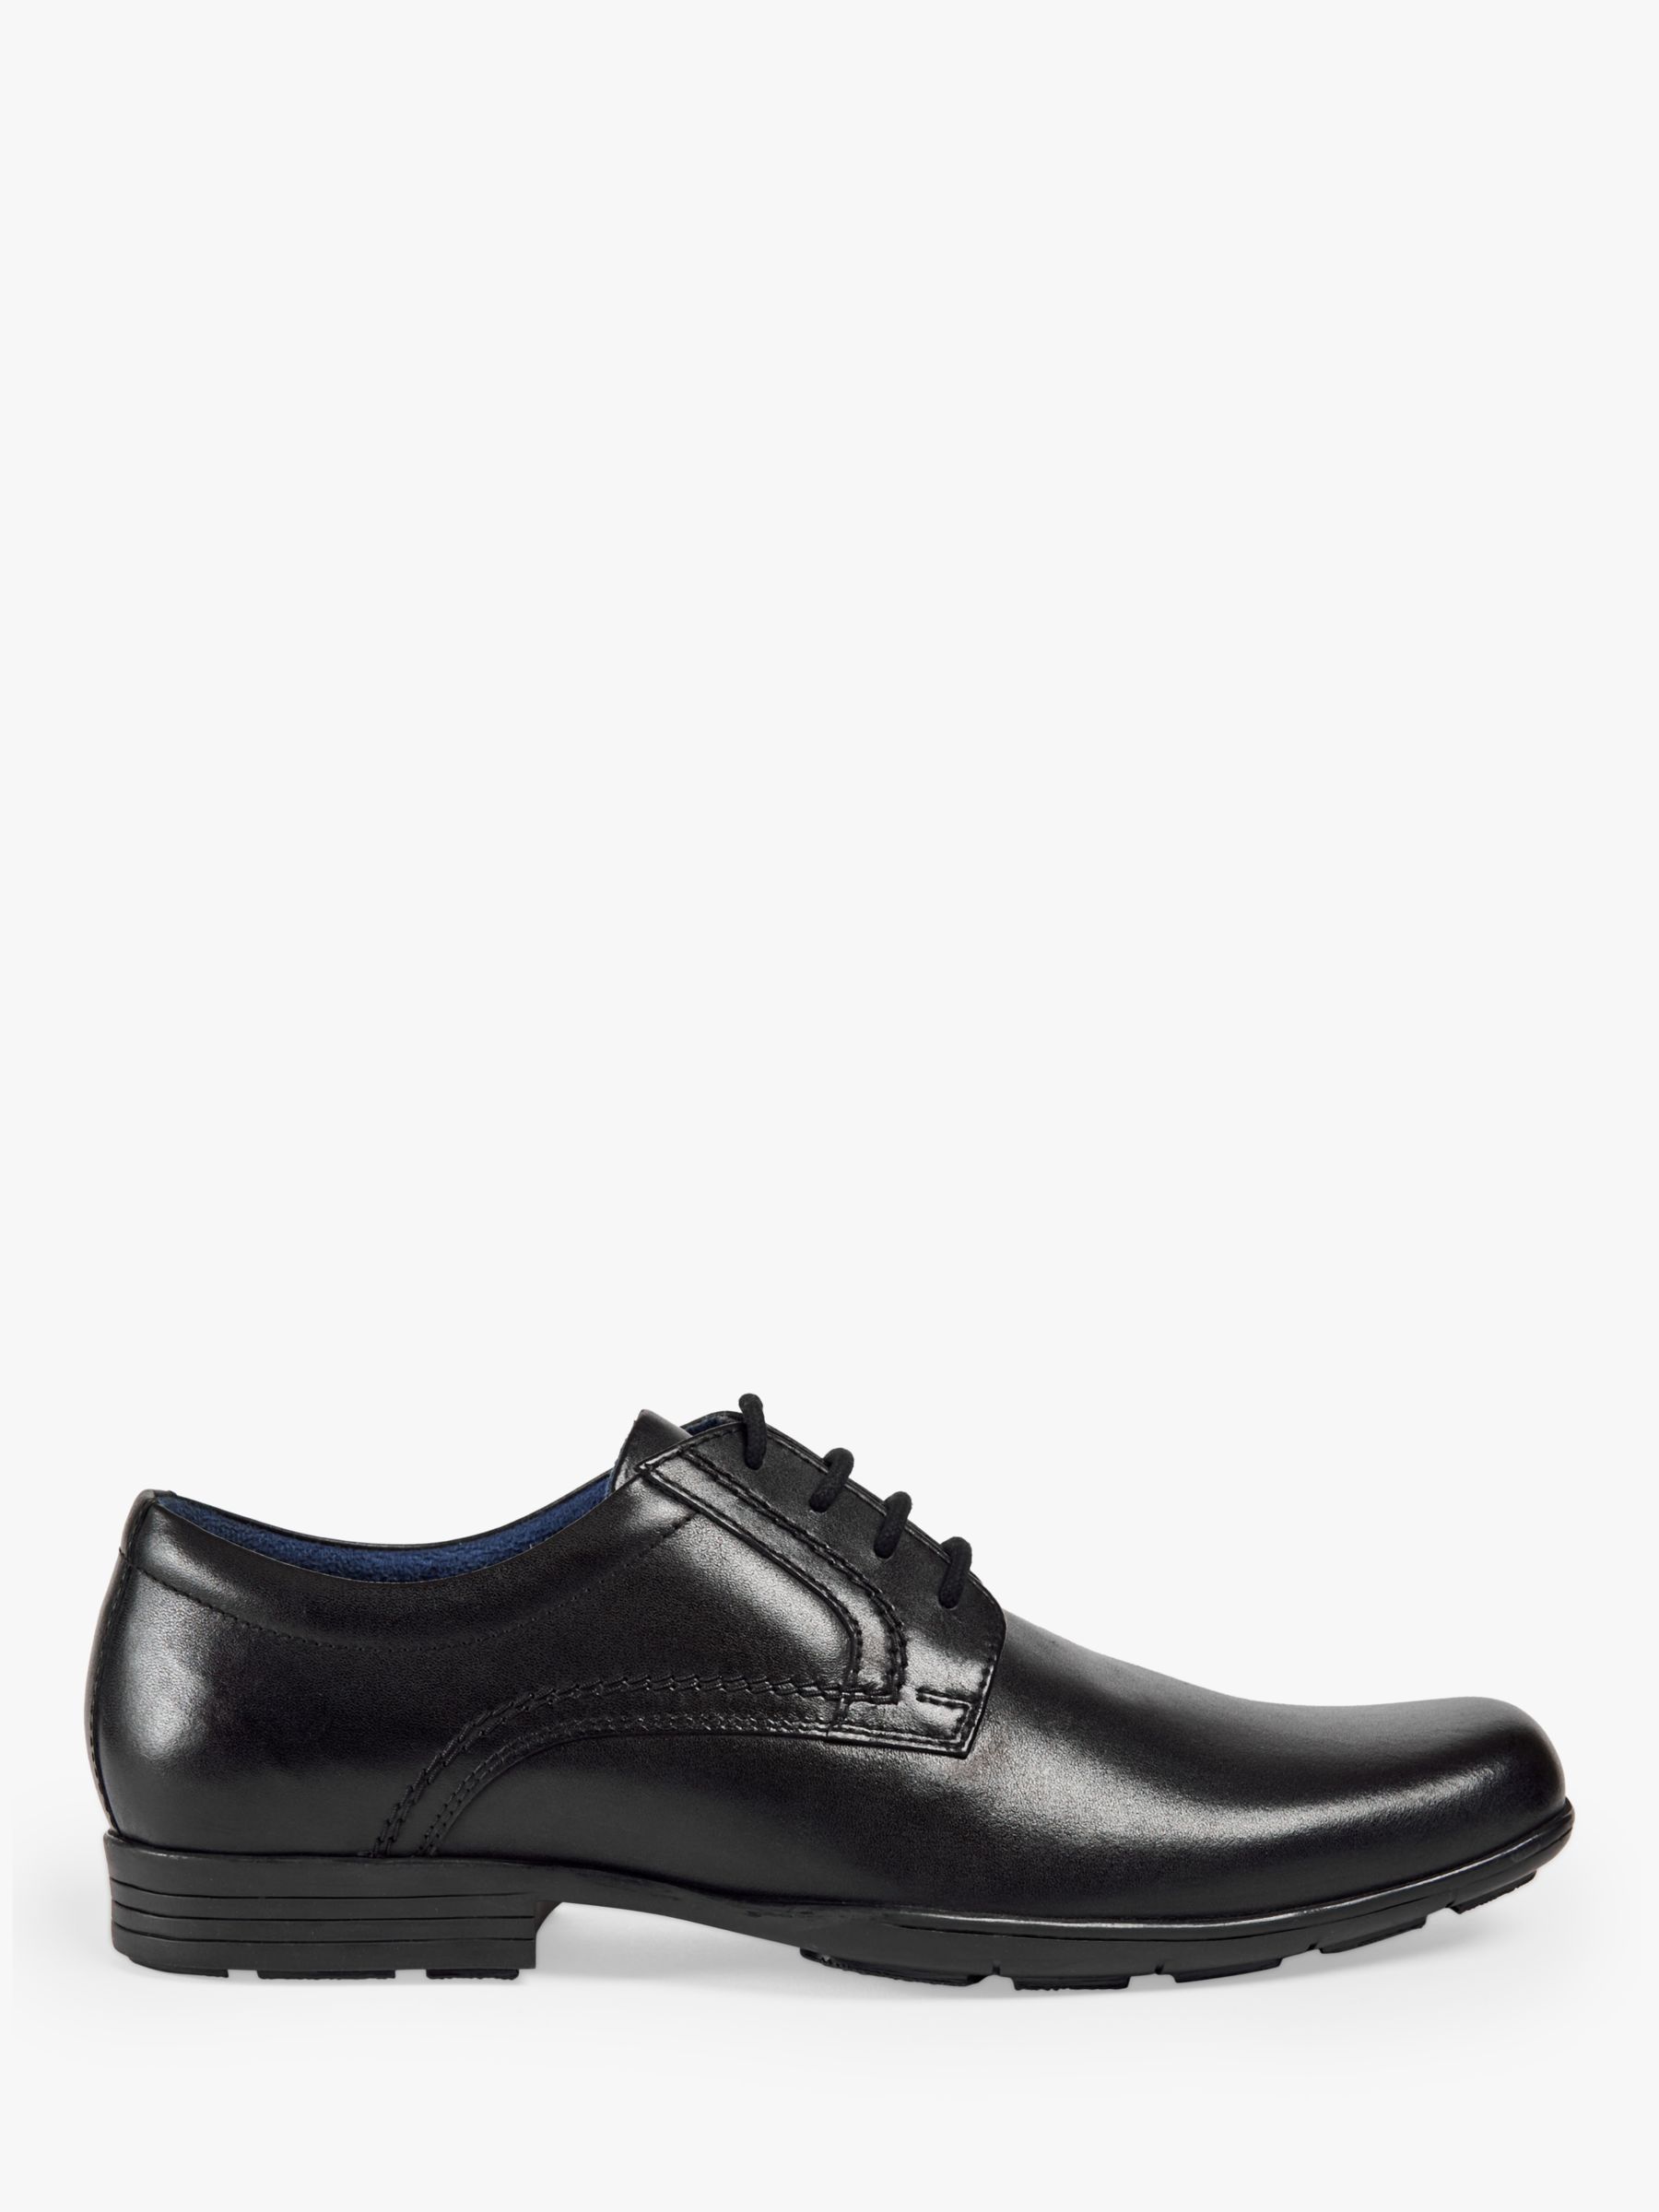 Pod Alec Smart Leather Lace Up Shoes, Black, 7